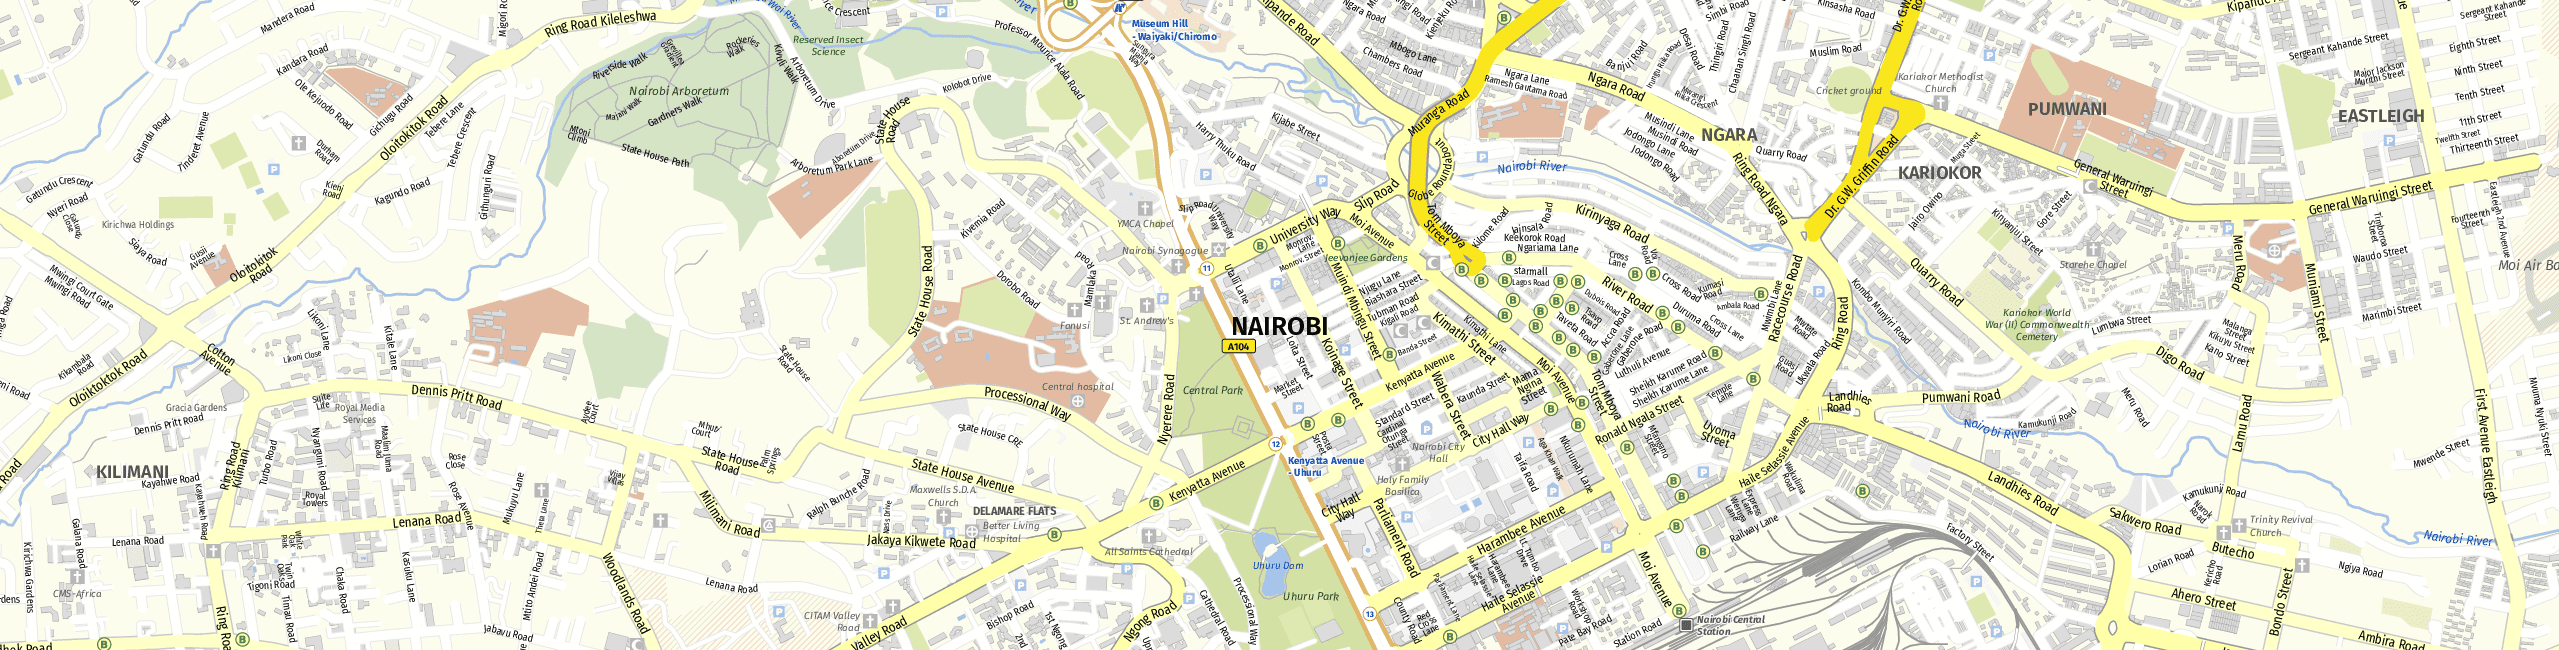 Stadtplan Nairobi zum Downloaden.